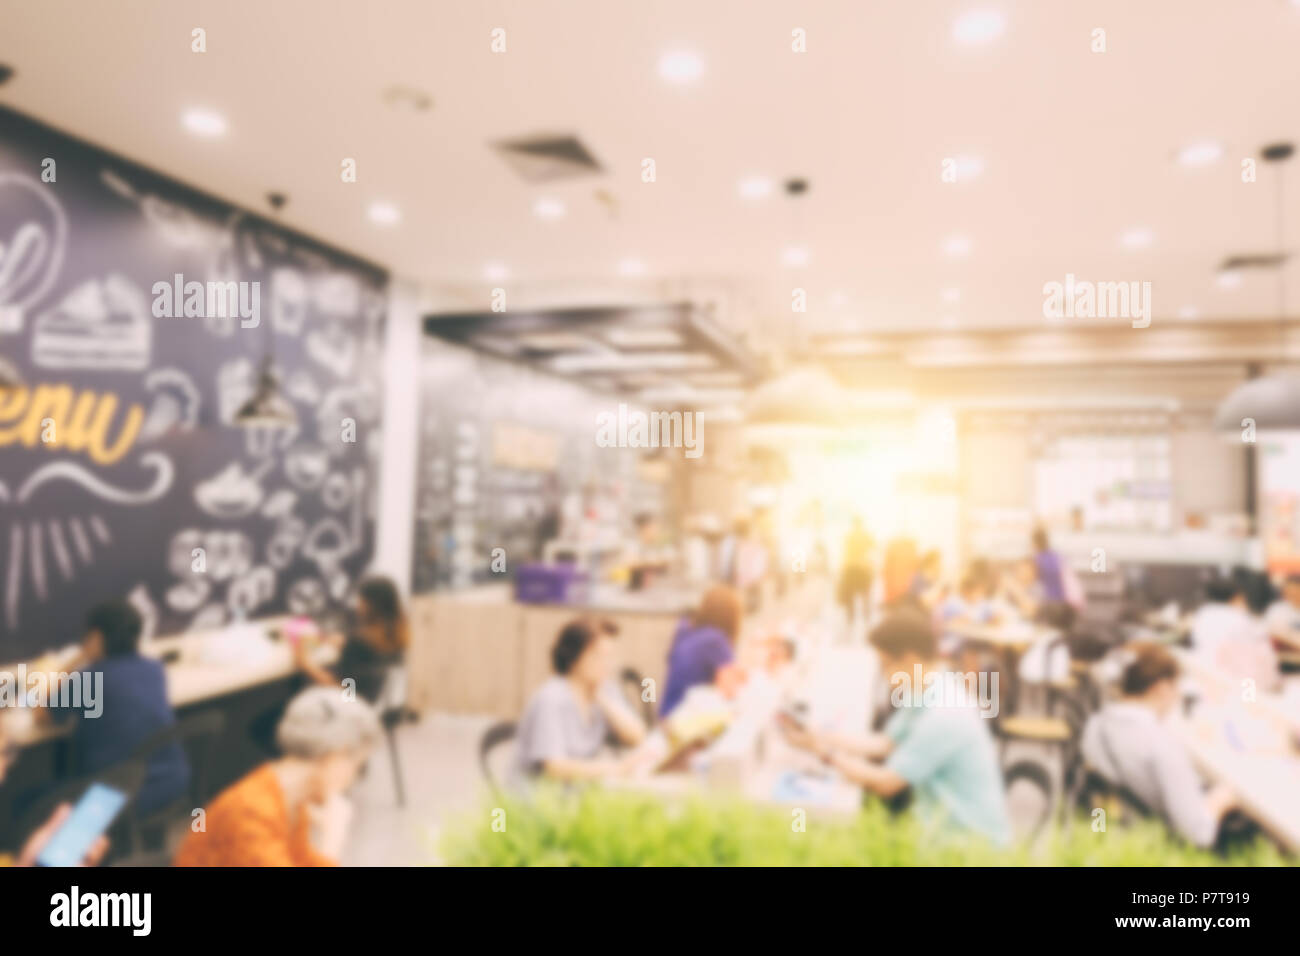 Blur Kantine für Gericht Esszimmer Halle in modernen Supermarkt einkaufen Lifestyle Stockfoto